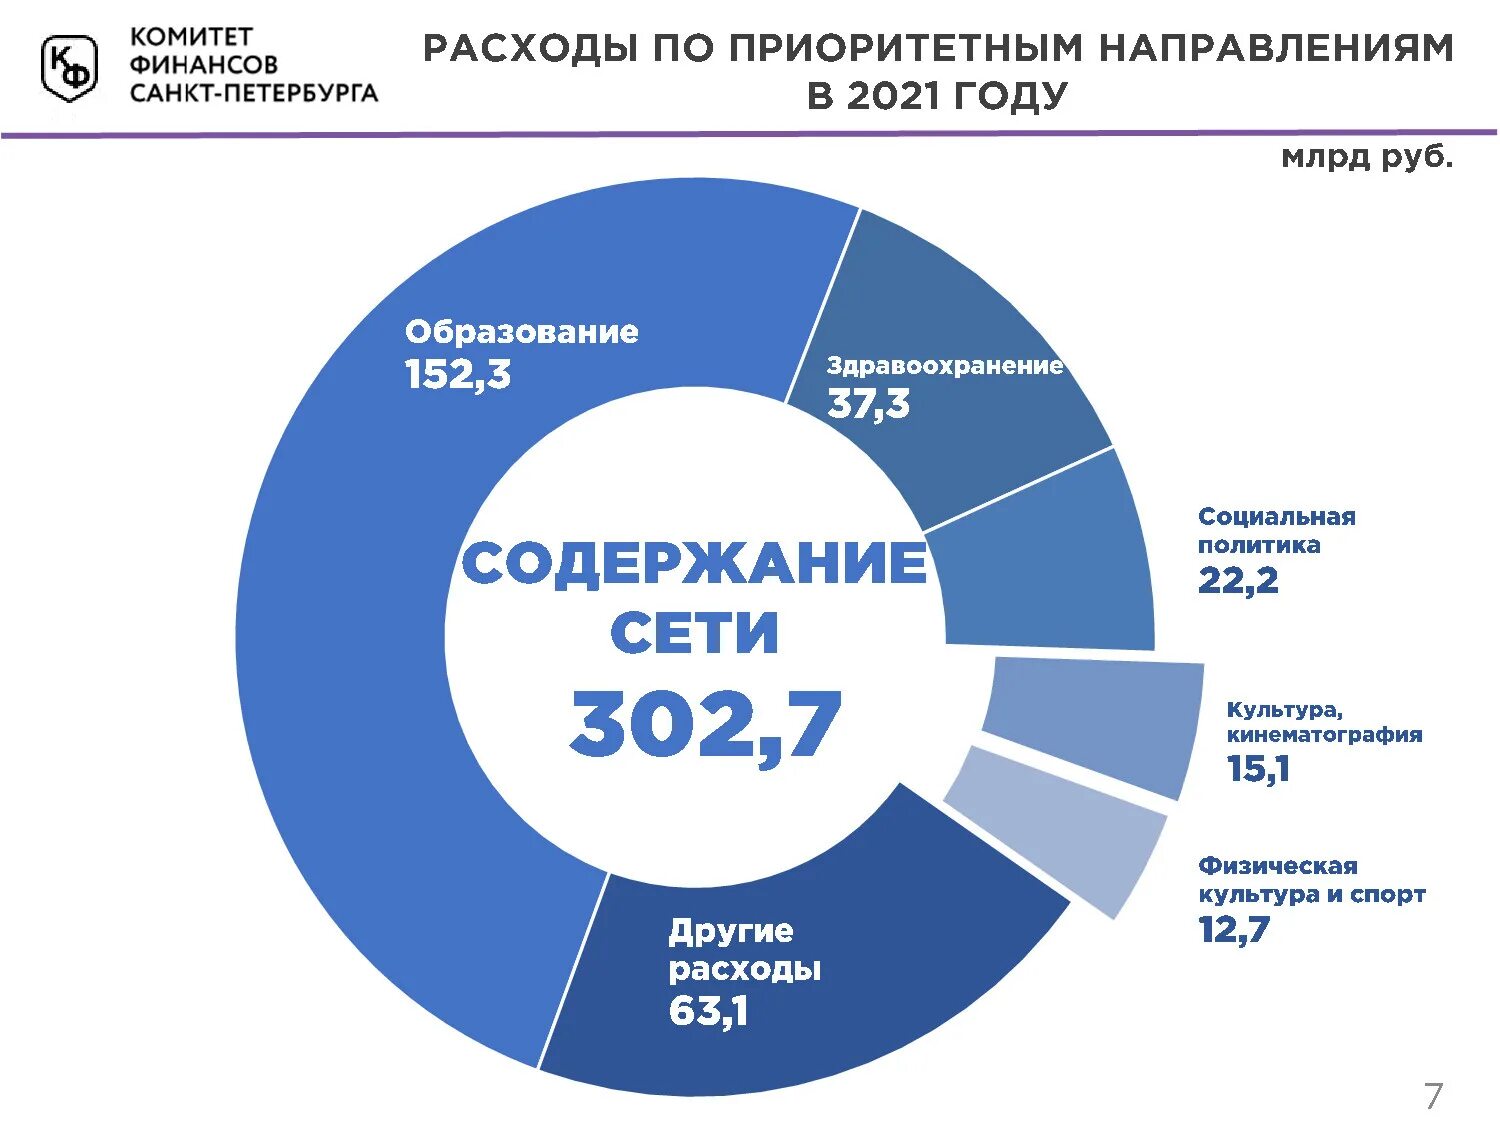 Рф 2021 сайт. Расходы на социальную политику 2021. Бюджет 2021. Бюджет Санкт-Петербурга на 2021. Бюджет ООН 2021.